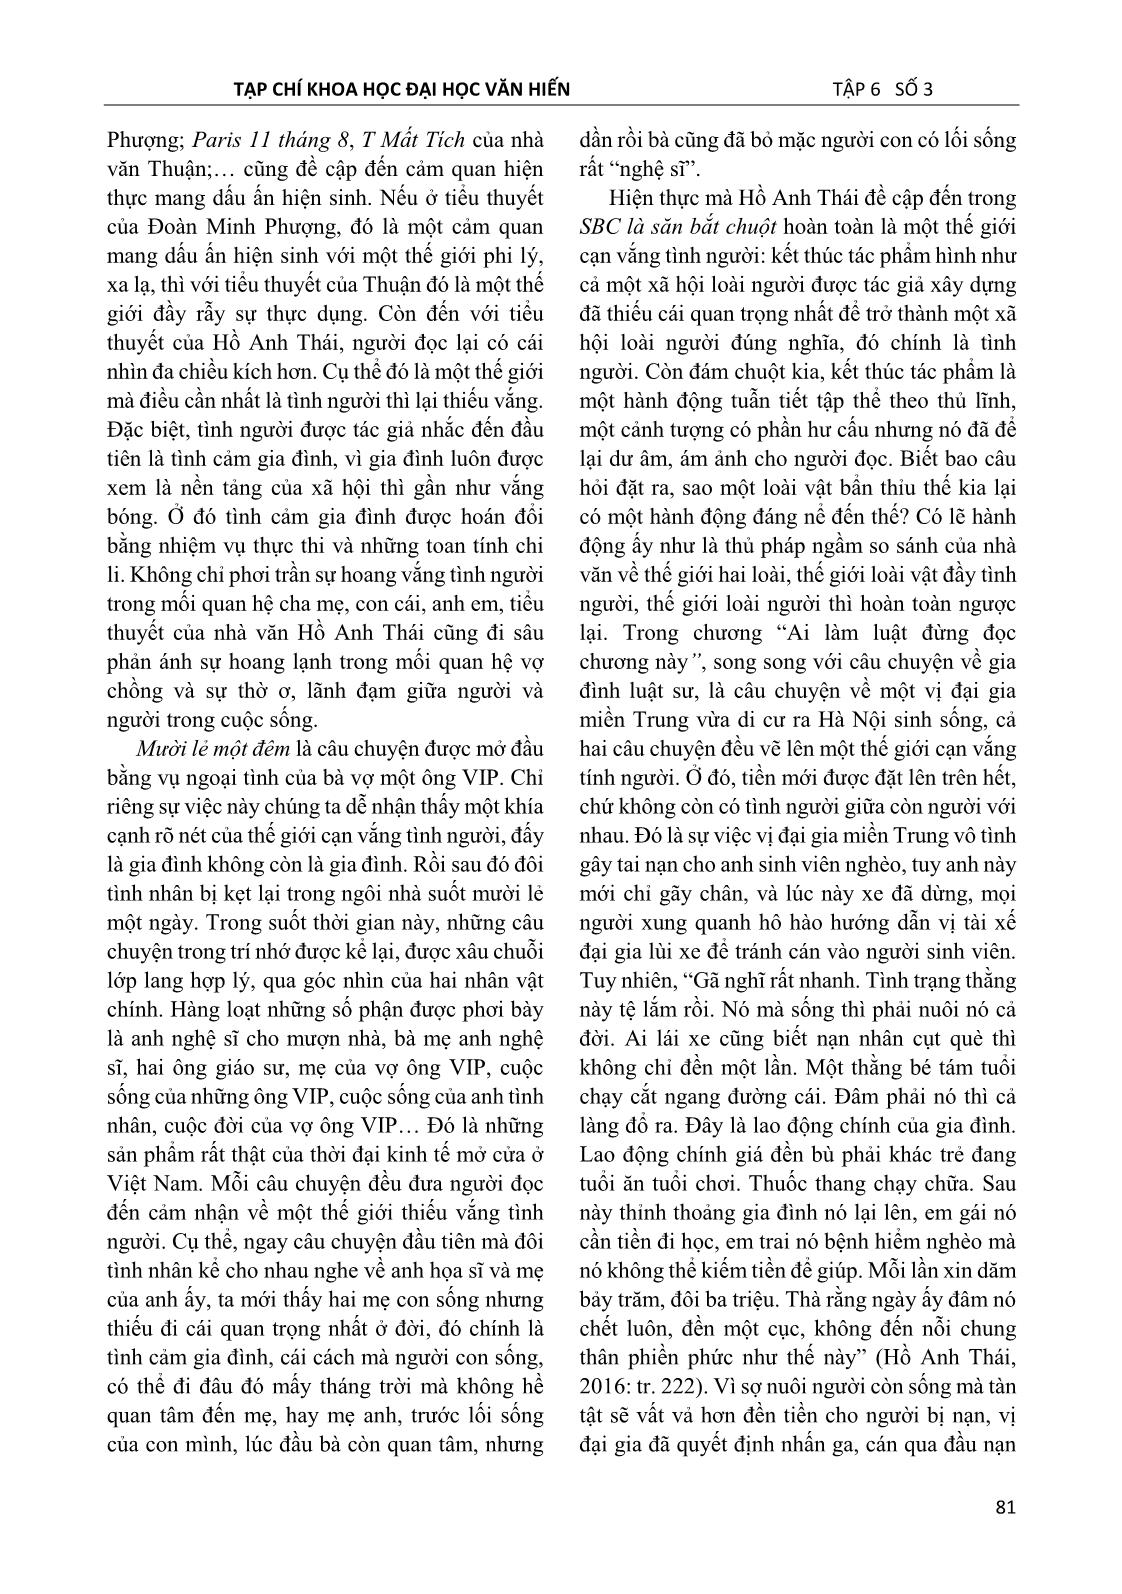 Dấu ấn hiện sinh trong tiểu thuyết Hồ Anh Thái nhìn từ cảm quan hiện thực trang 6